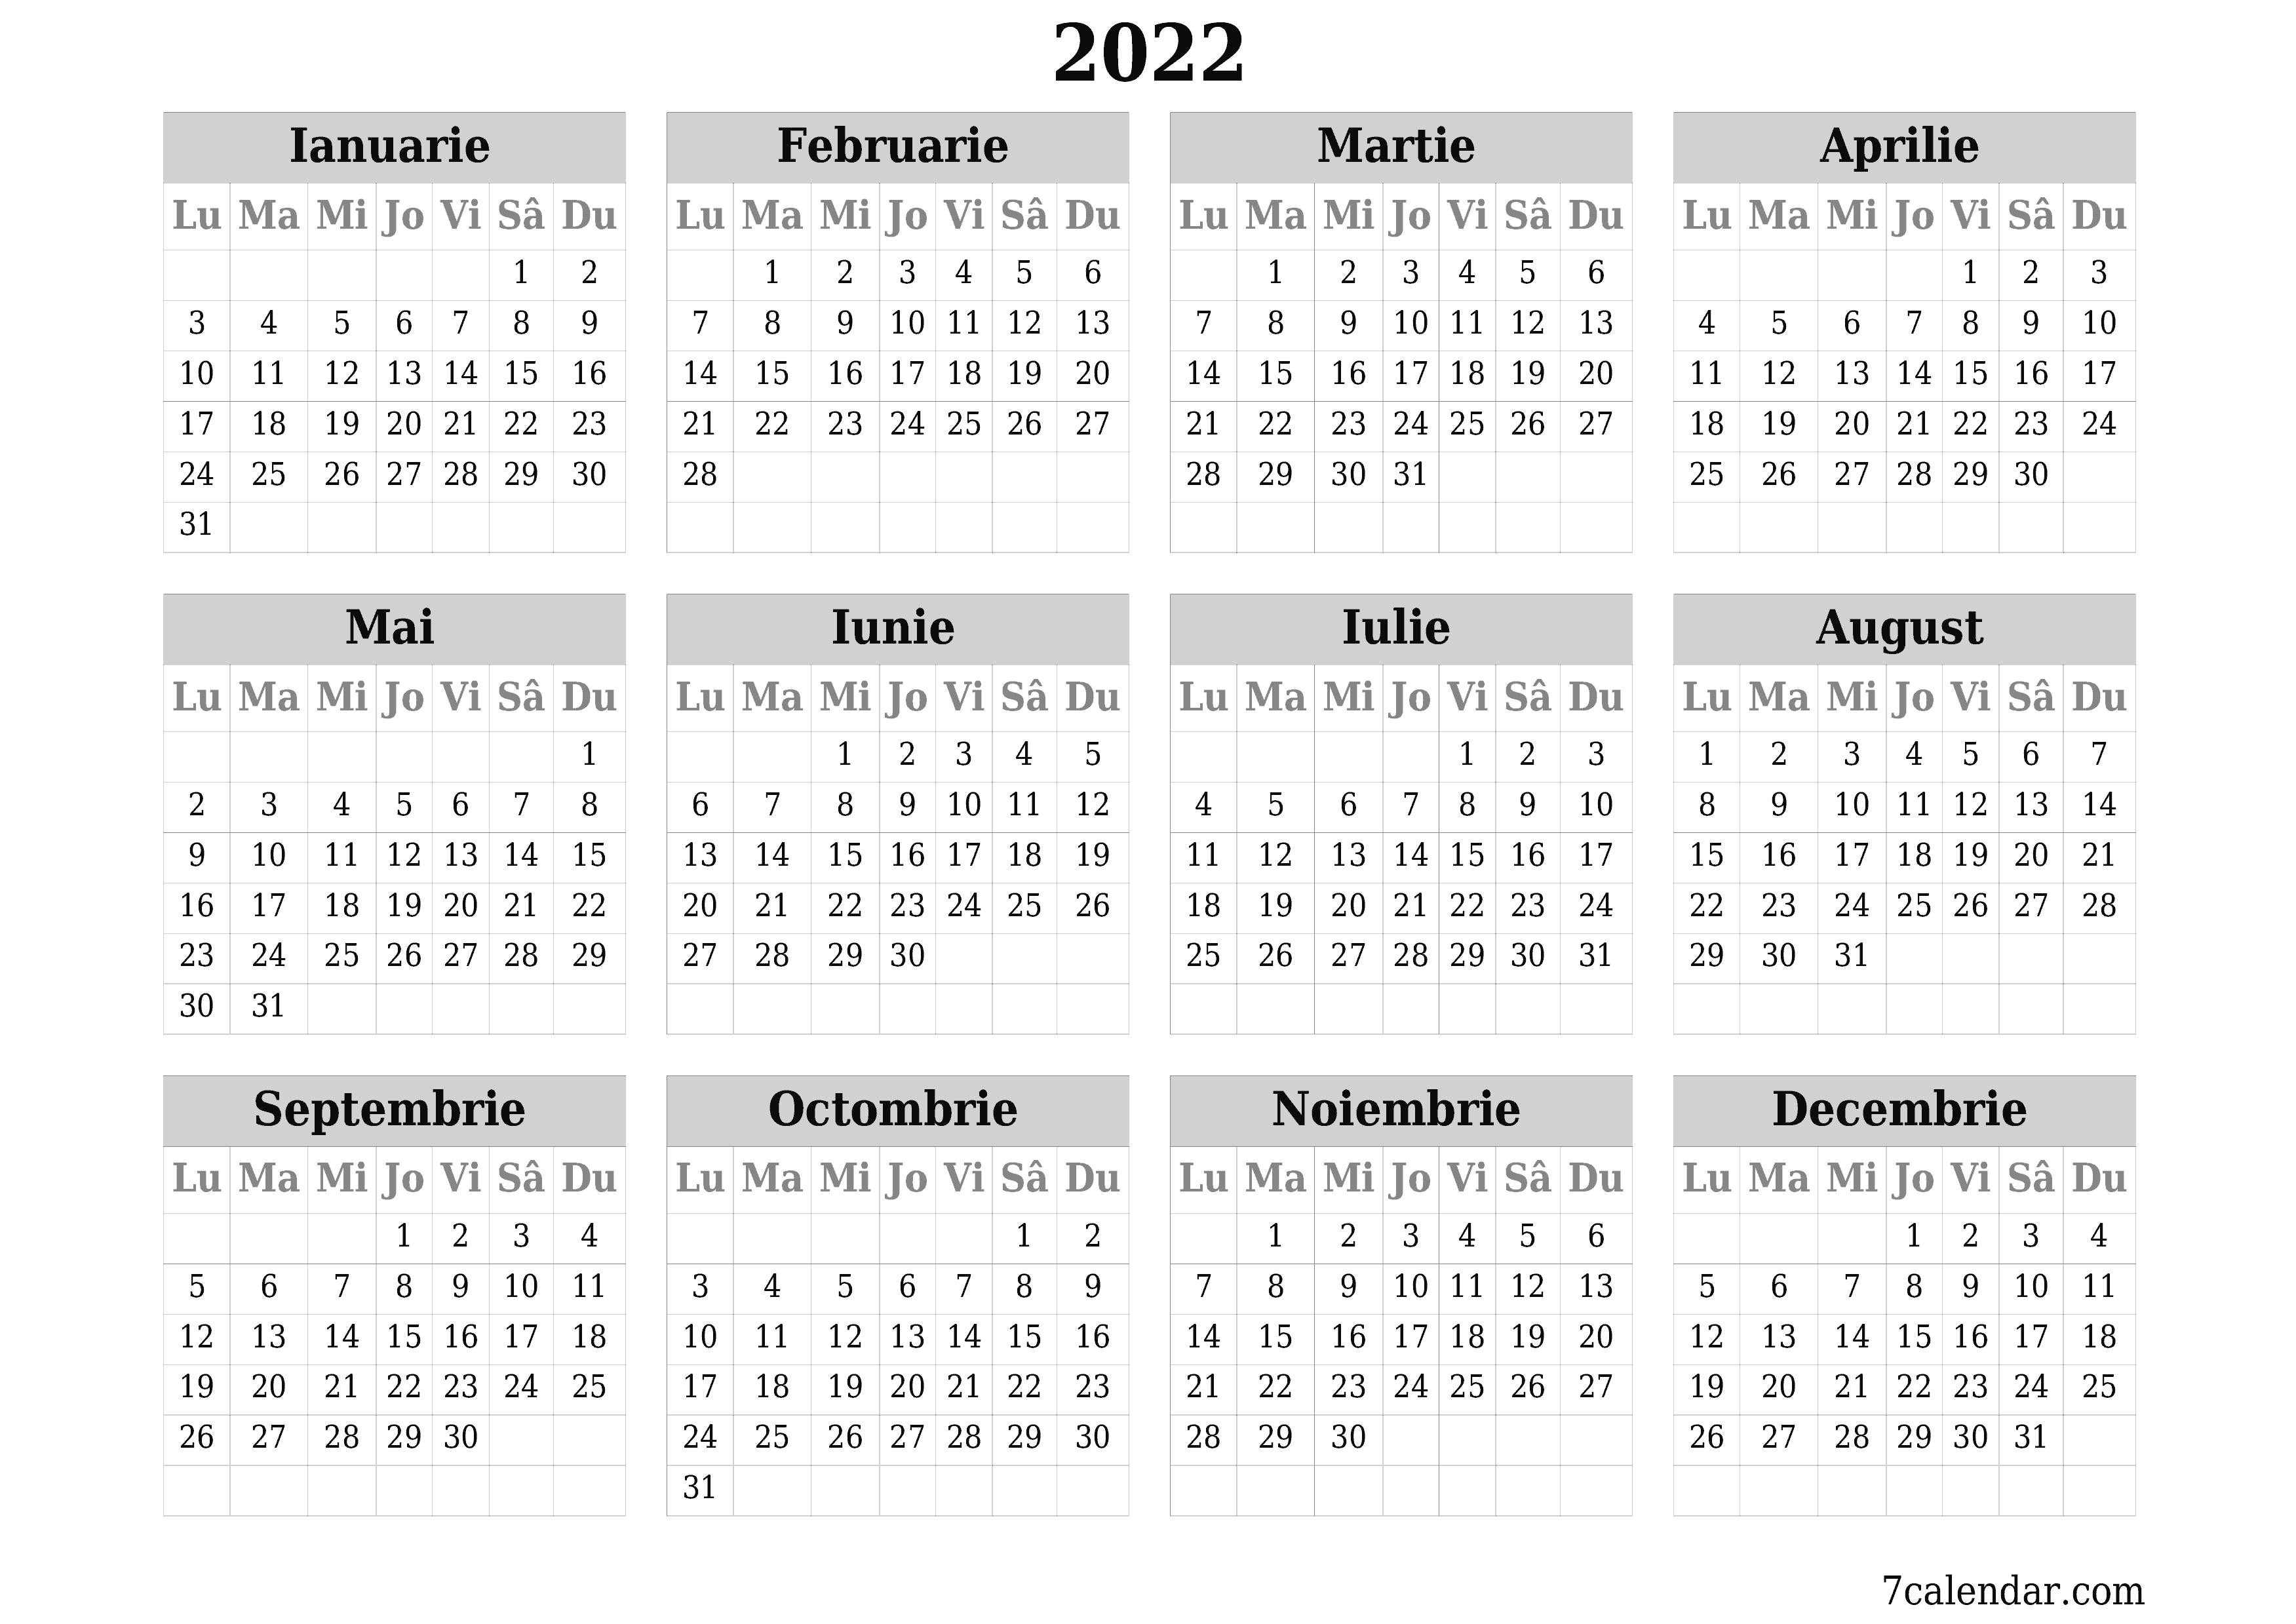 opțiuni pentru noiembrie 2022)